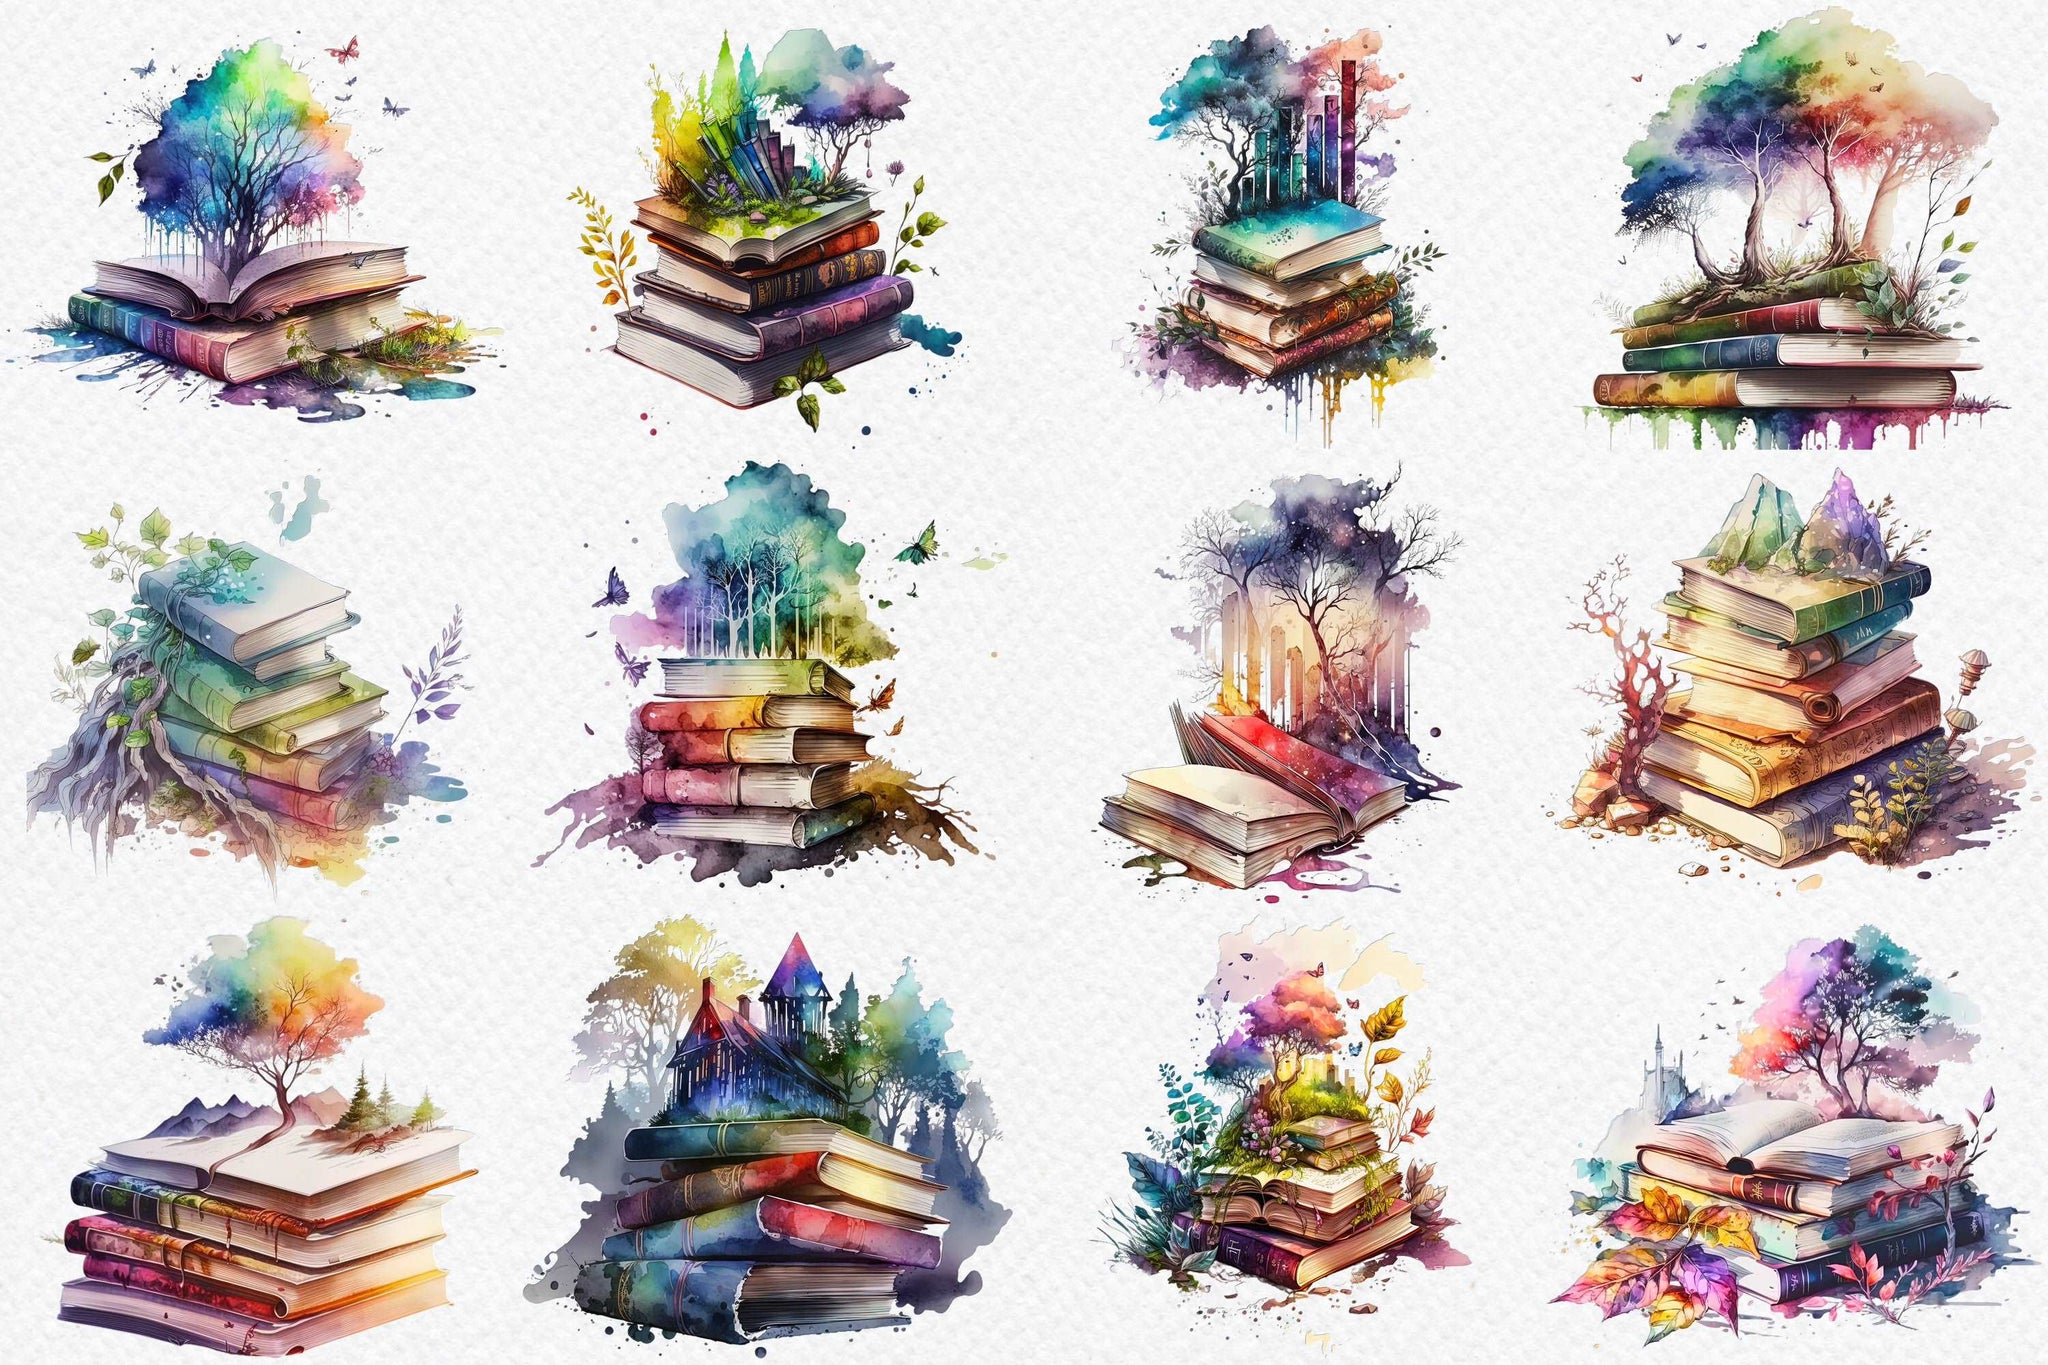 Watercolor Books Clipart